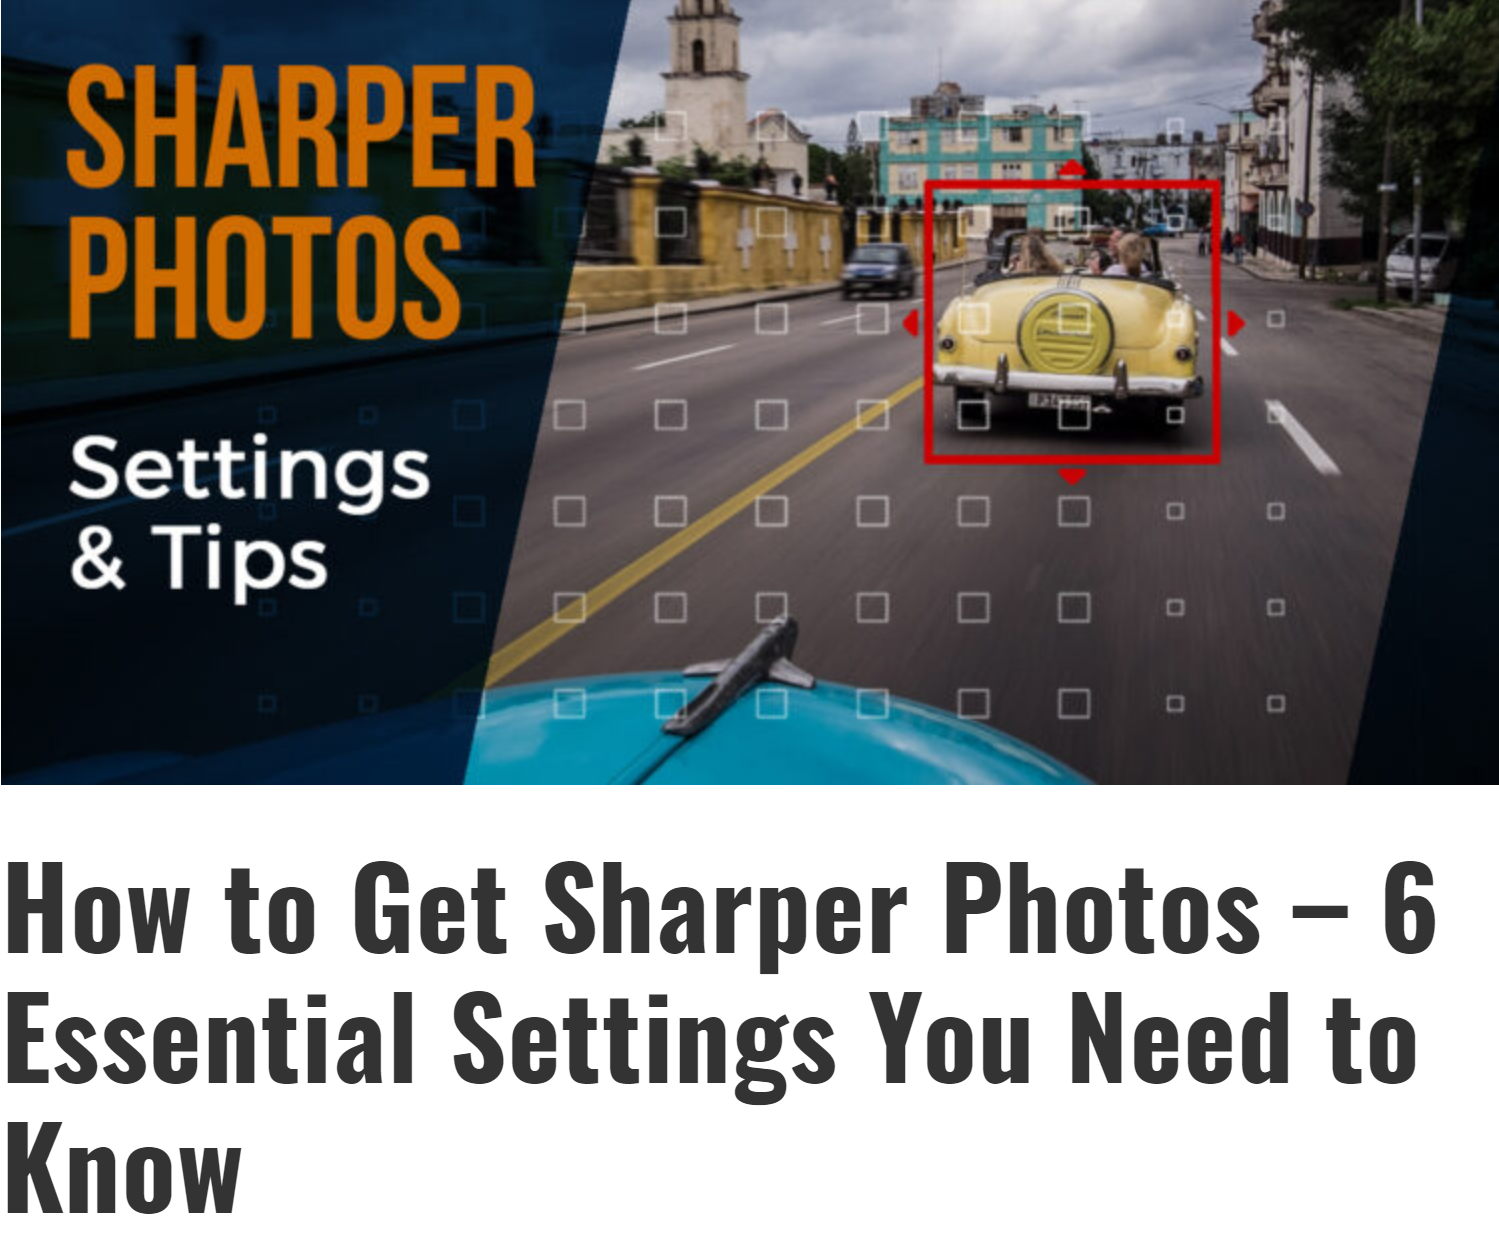 How to Get Sharper Photos